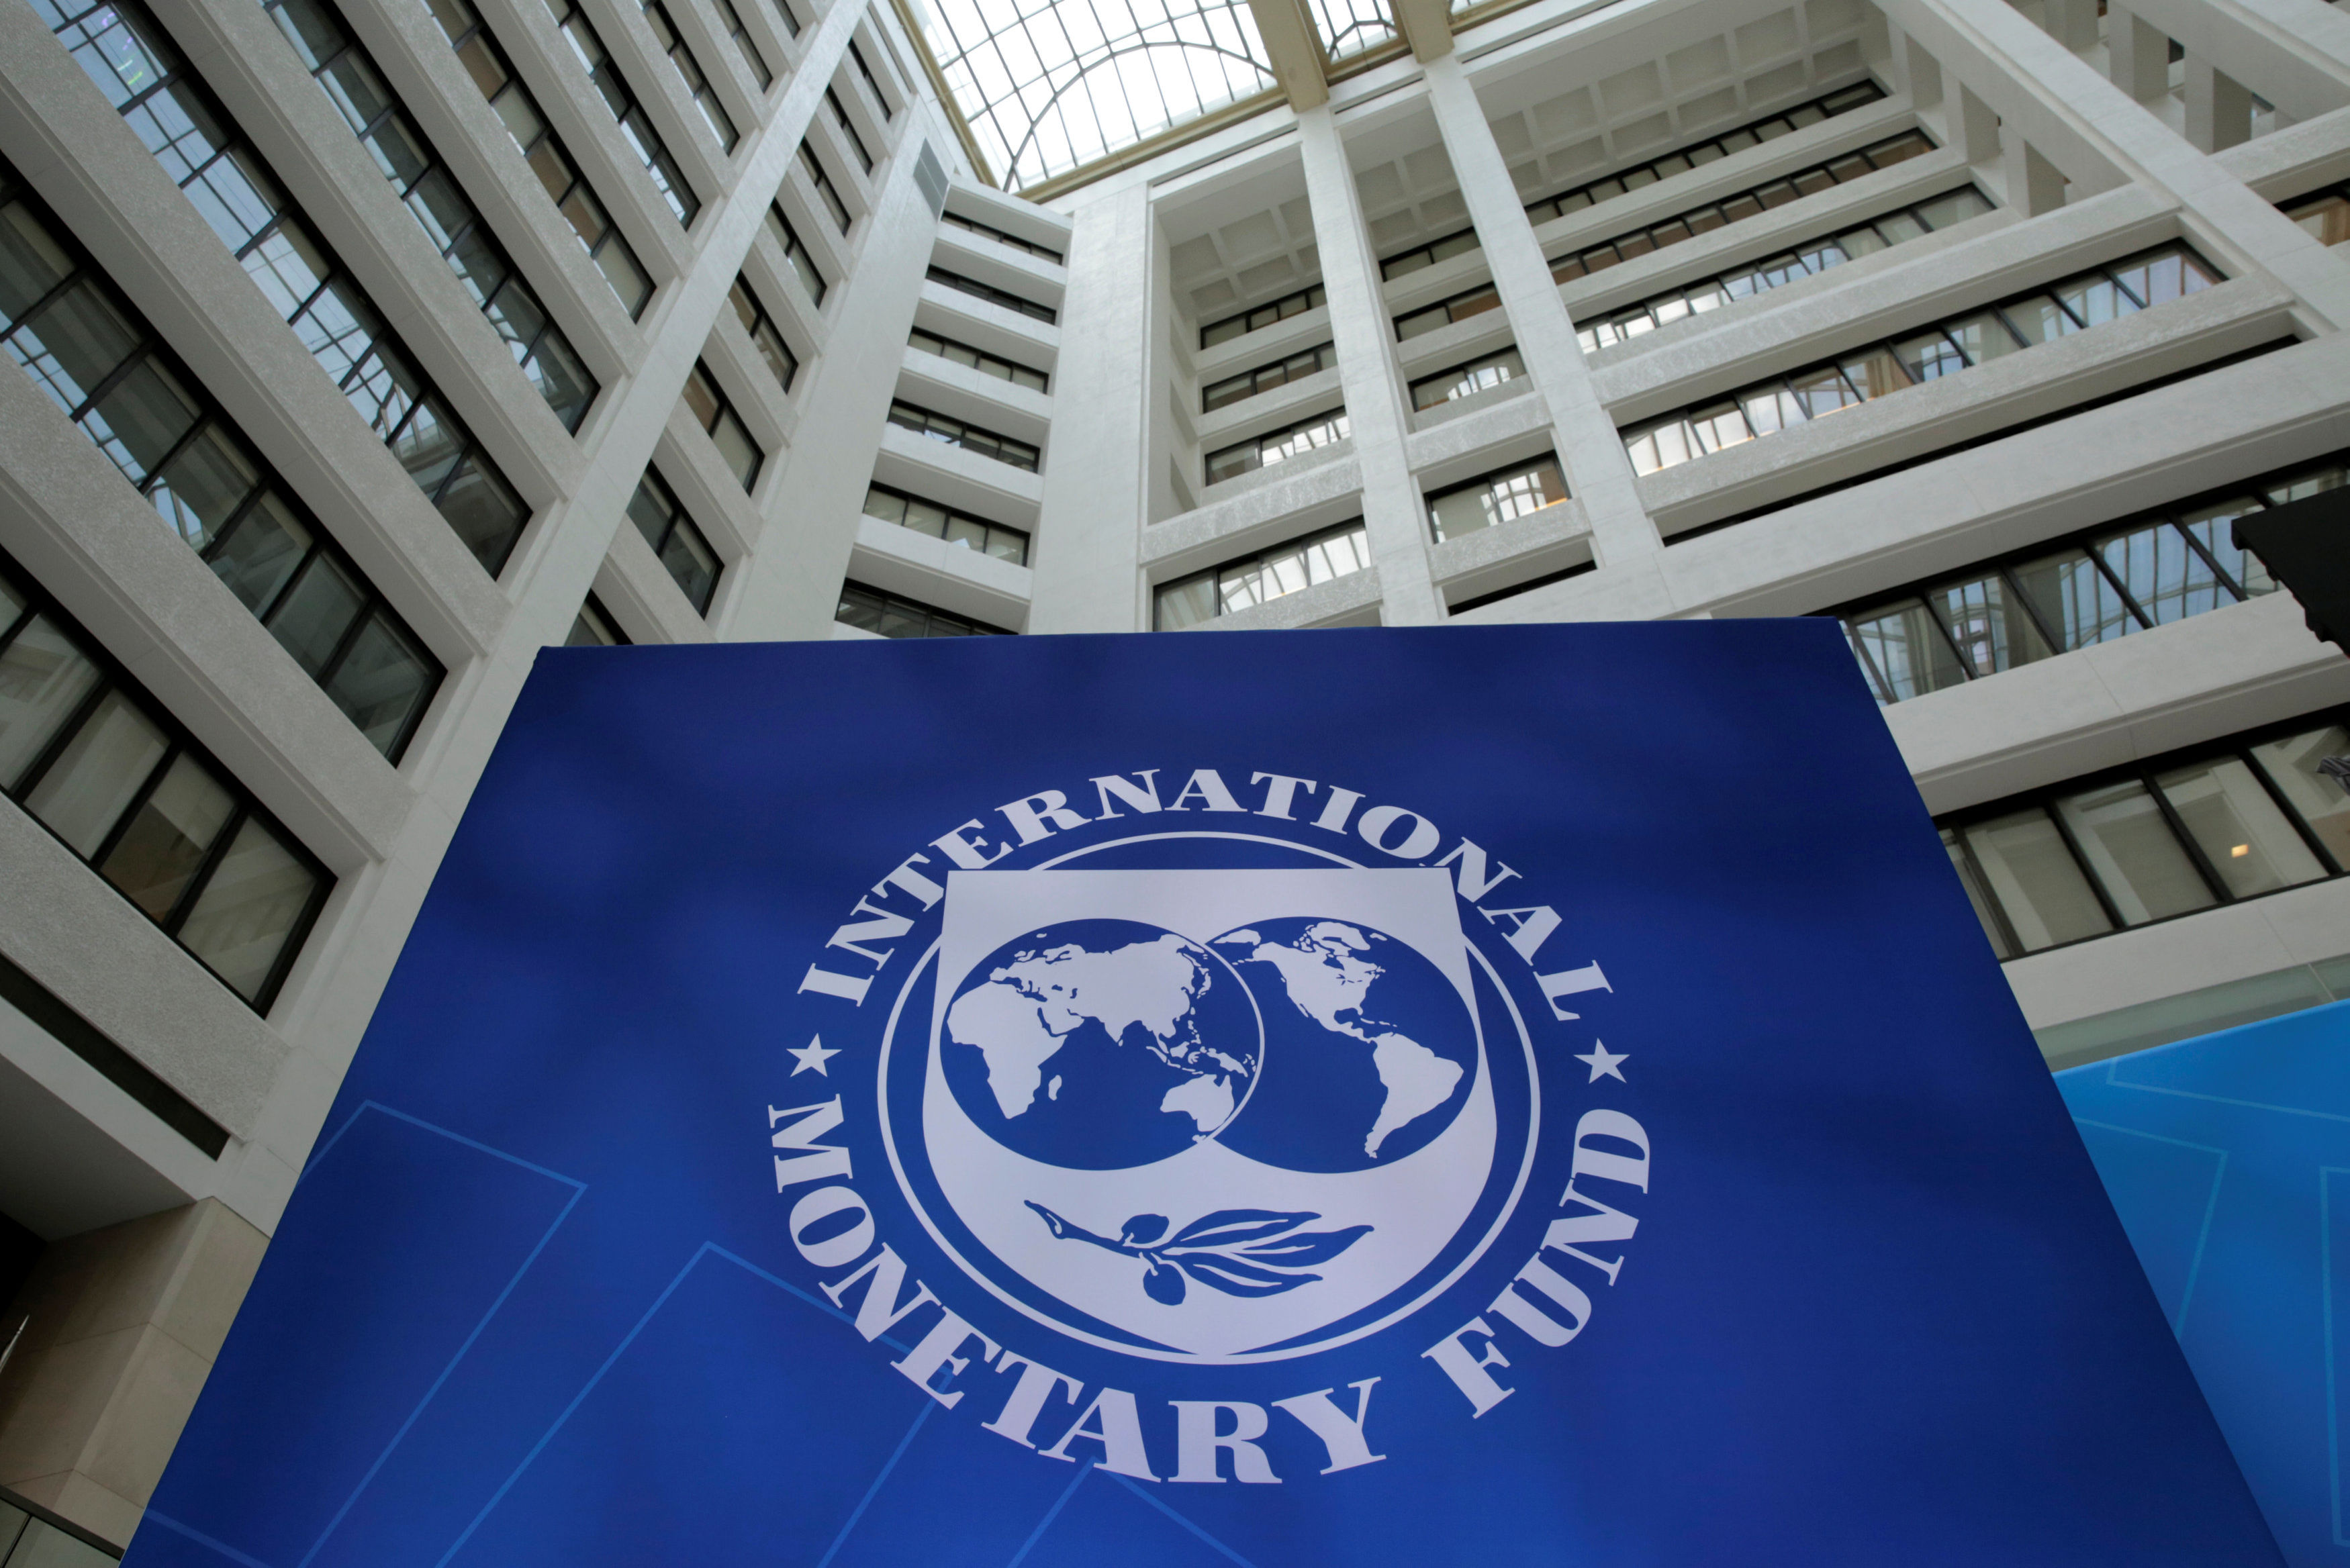 Валютный фонд россии. Международный валютный фонд (МВФ) - International monetary Fund (IMF). Здание МВФ США. Флаг МВФ. Здание МВФ В Вашингтоне.